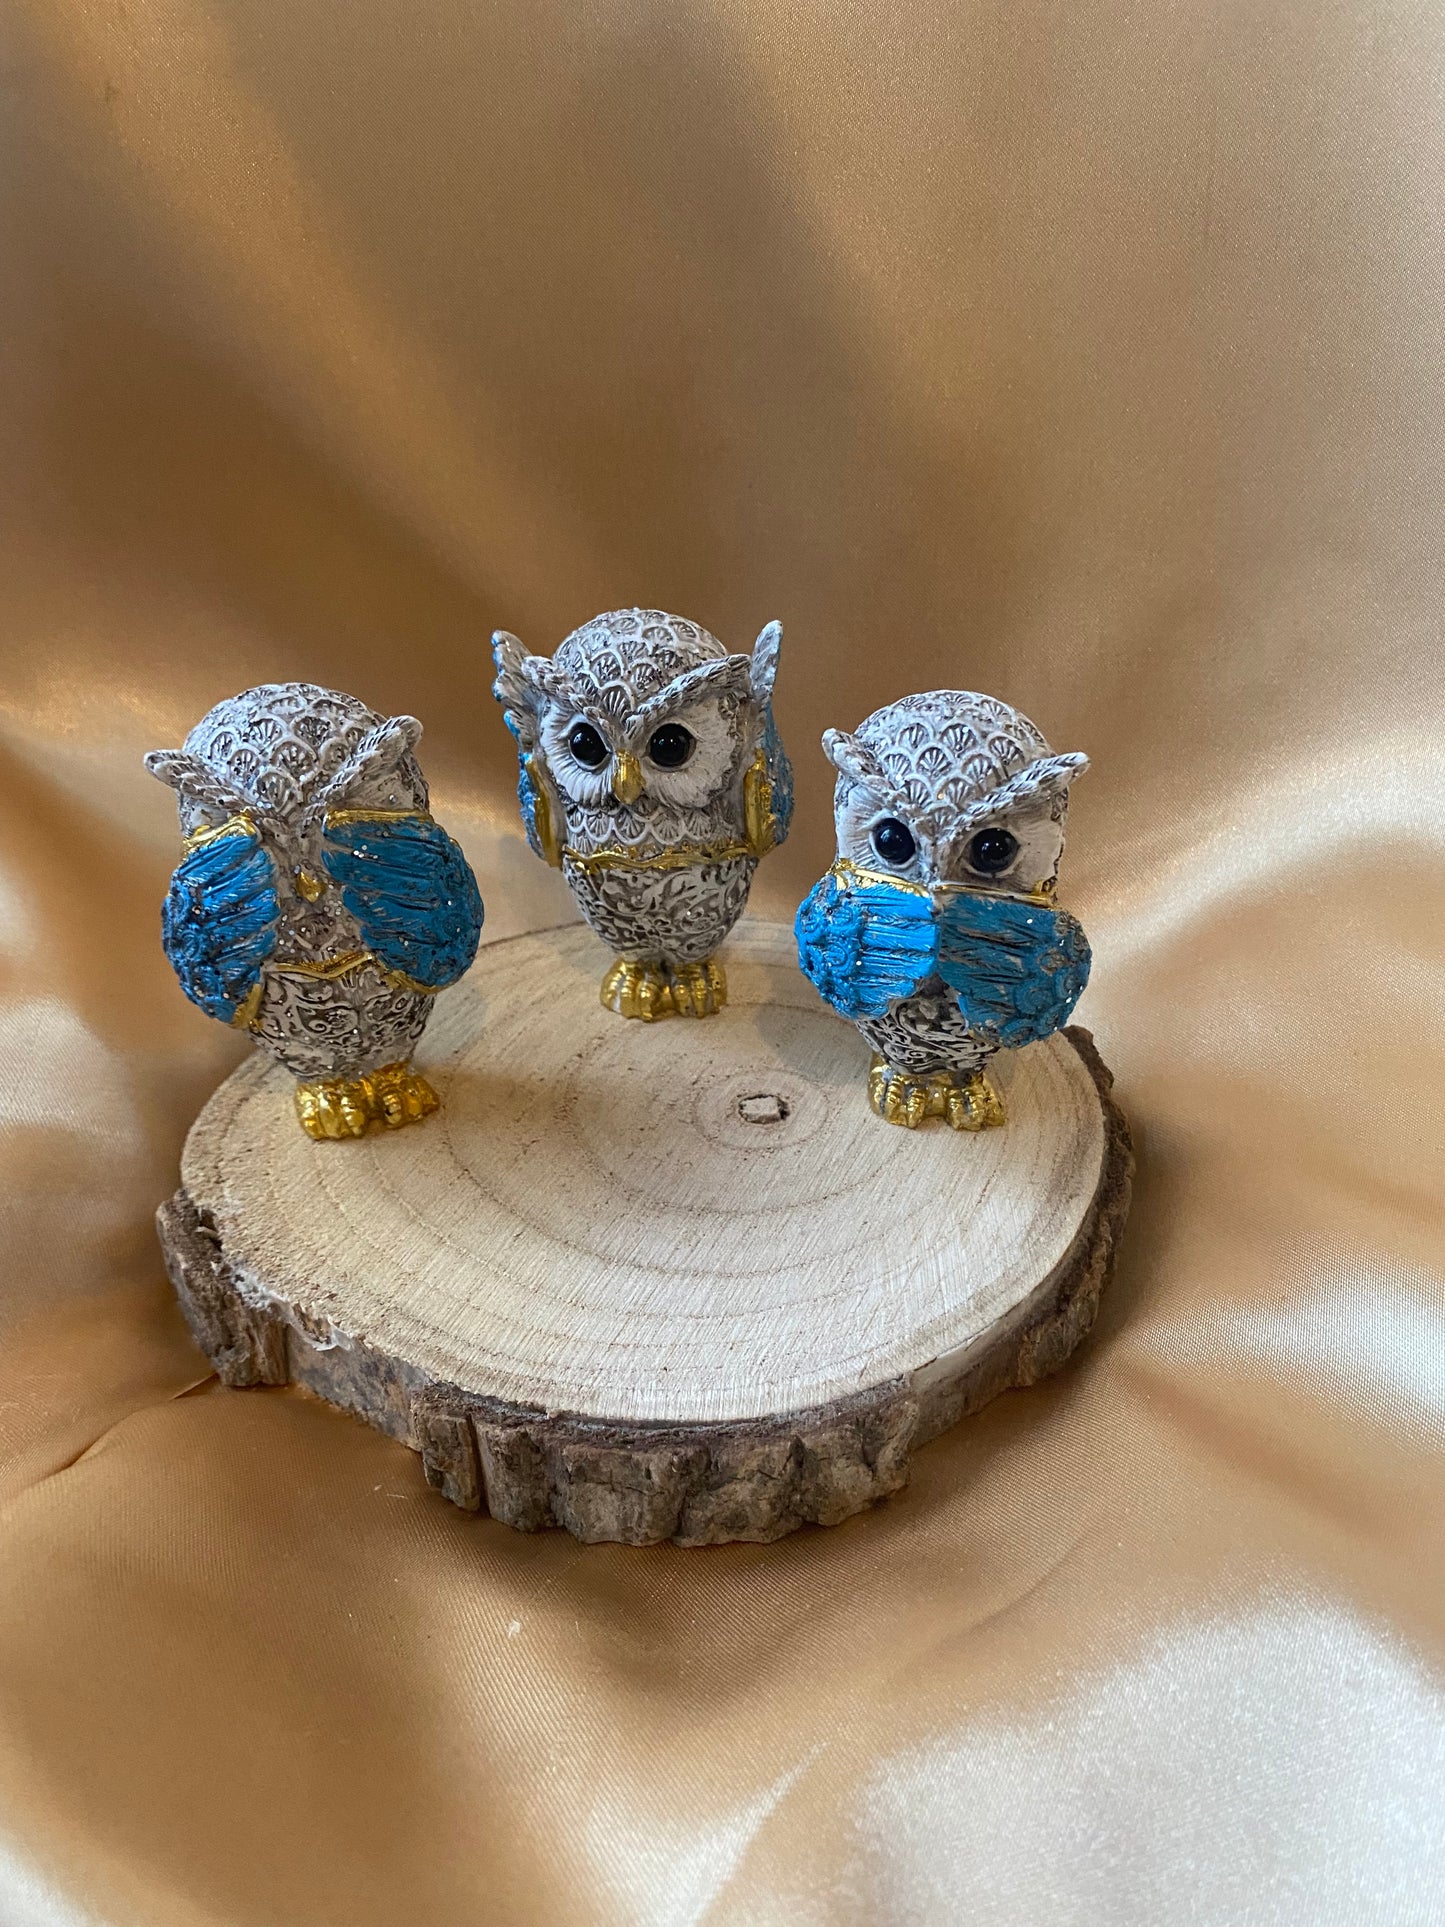 Set of Owls